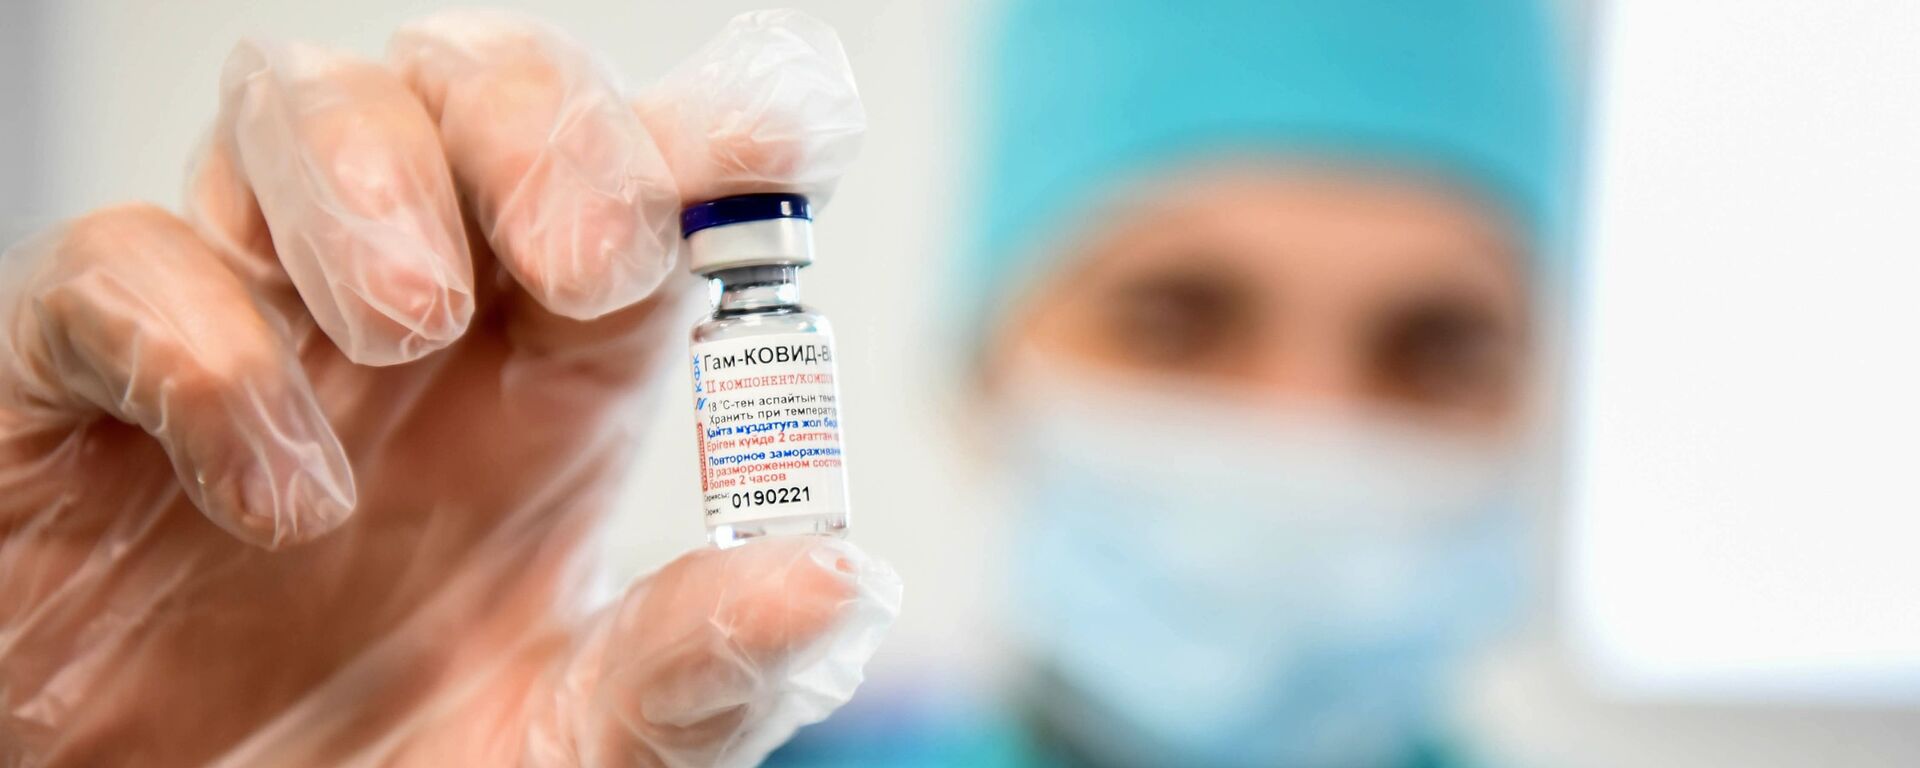 آصفری: دادستان هند، فروش واکسن کرونا به ایران را ممنوع کرده است - اسپوتنیک ایران  , 1920, 11.04.2021